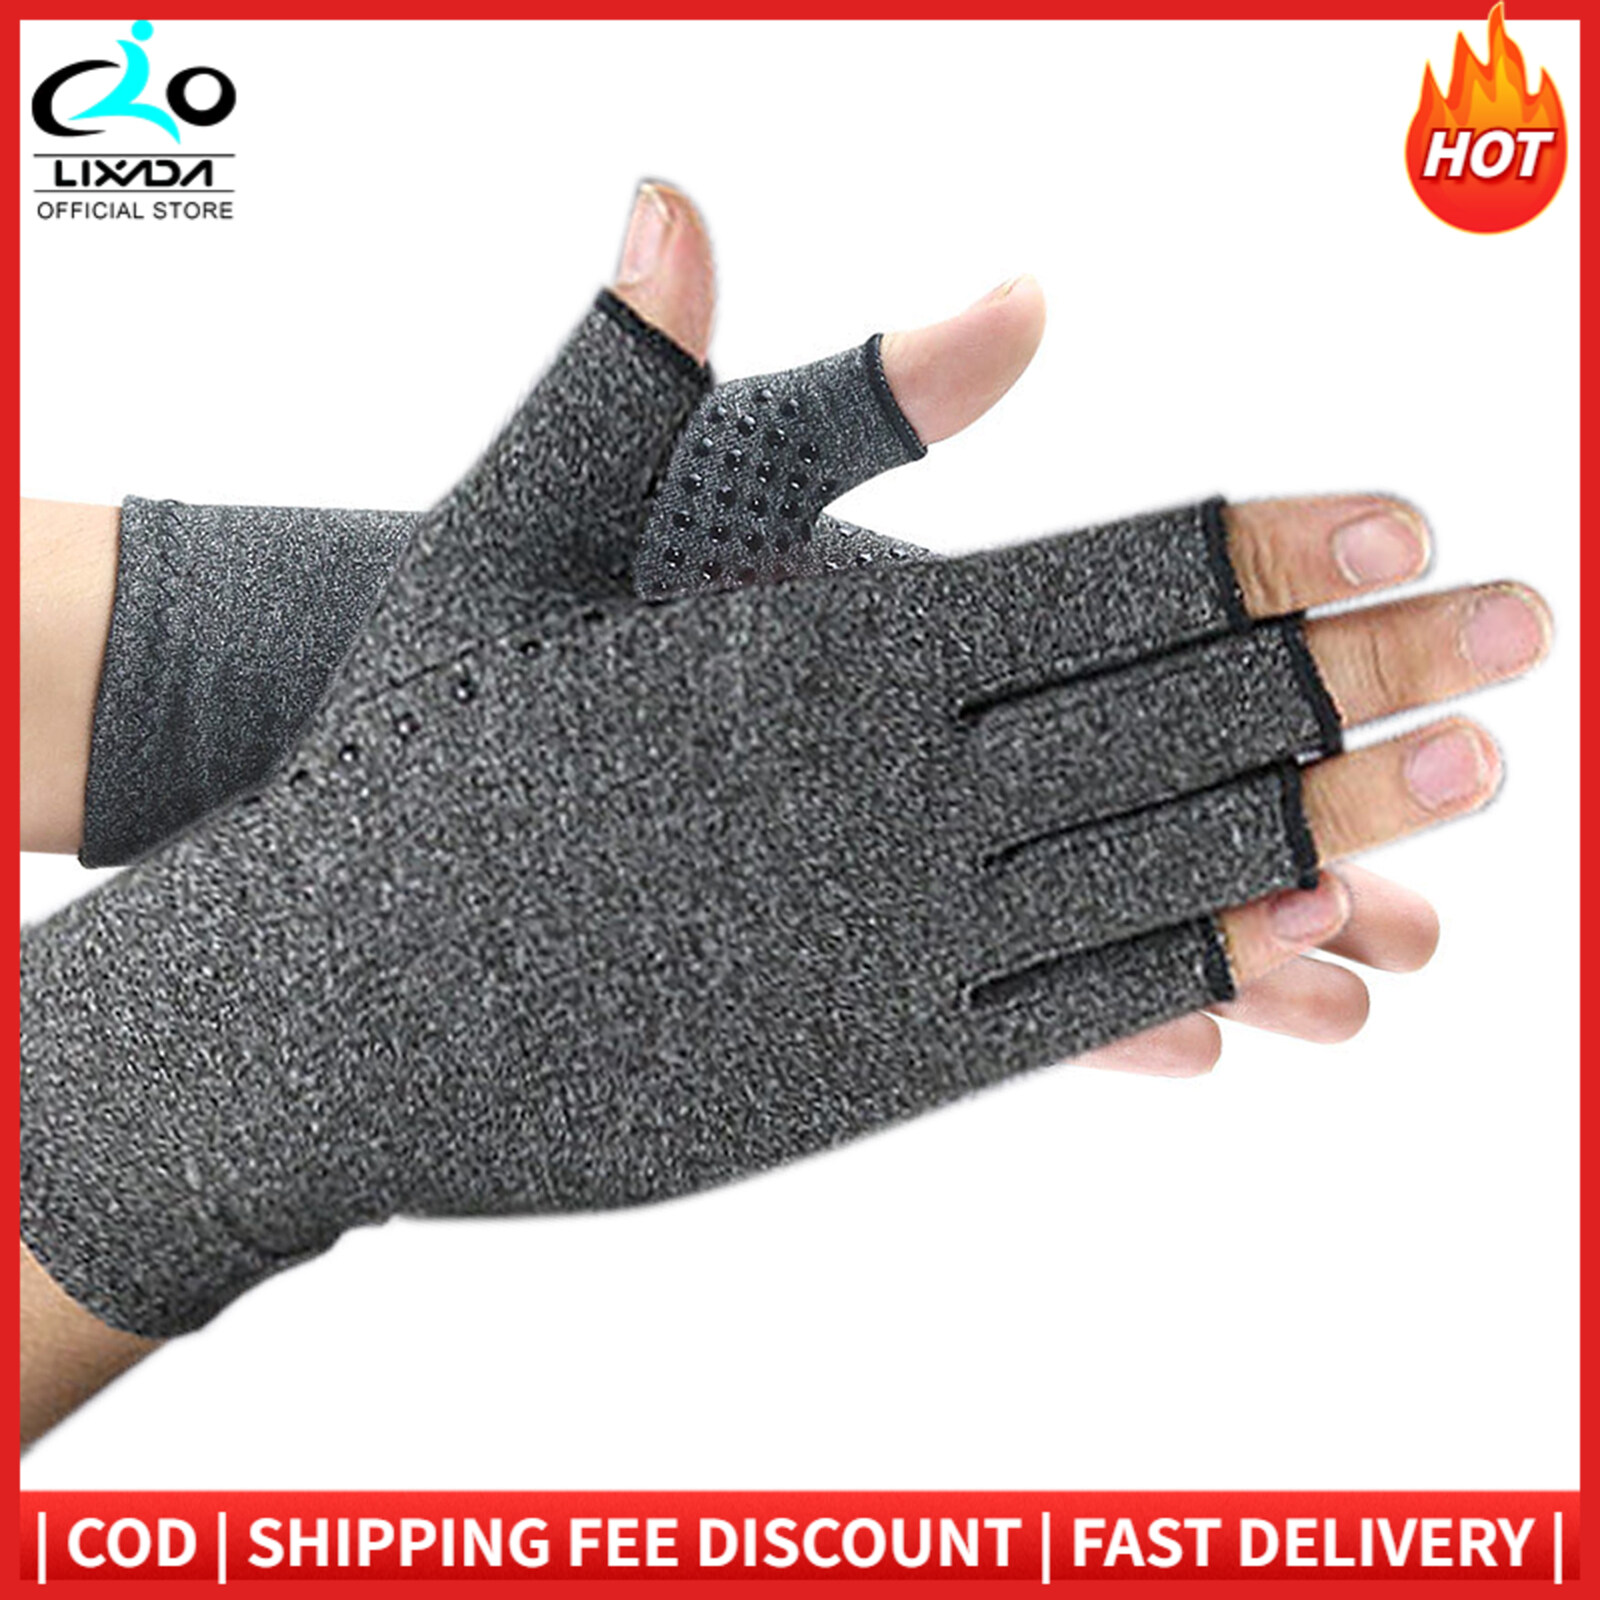 Anti-slip Fingerless Arthritis Gloves Carpal Tunnel Gloves for Computer